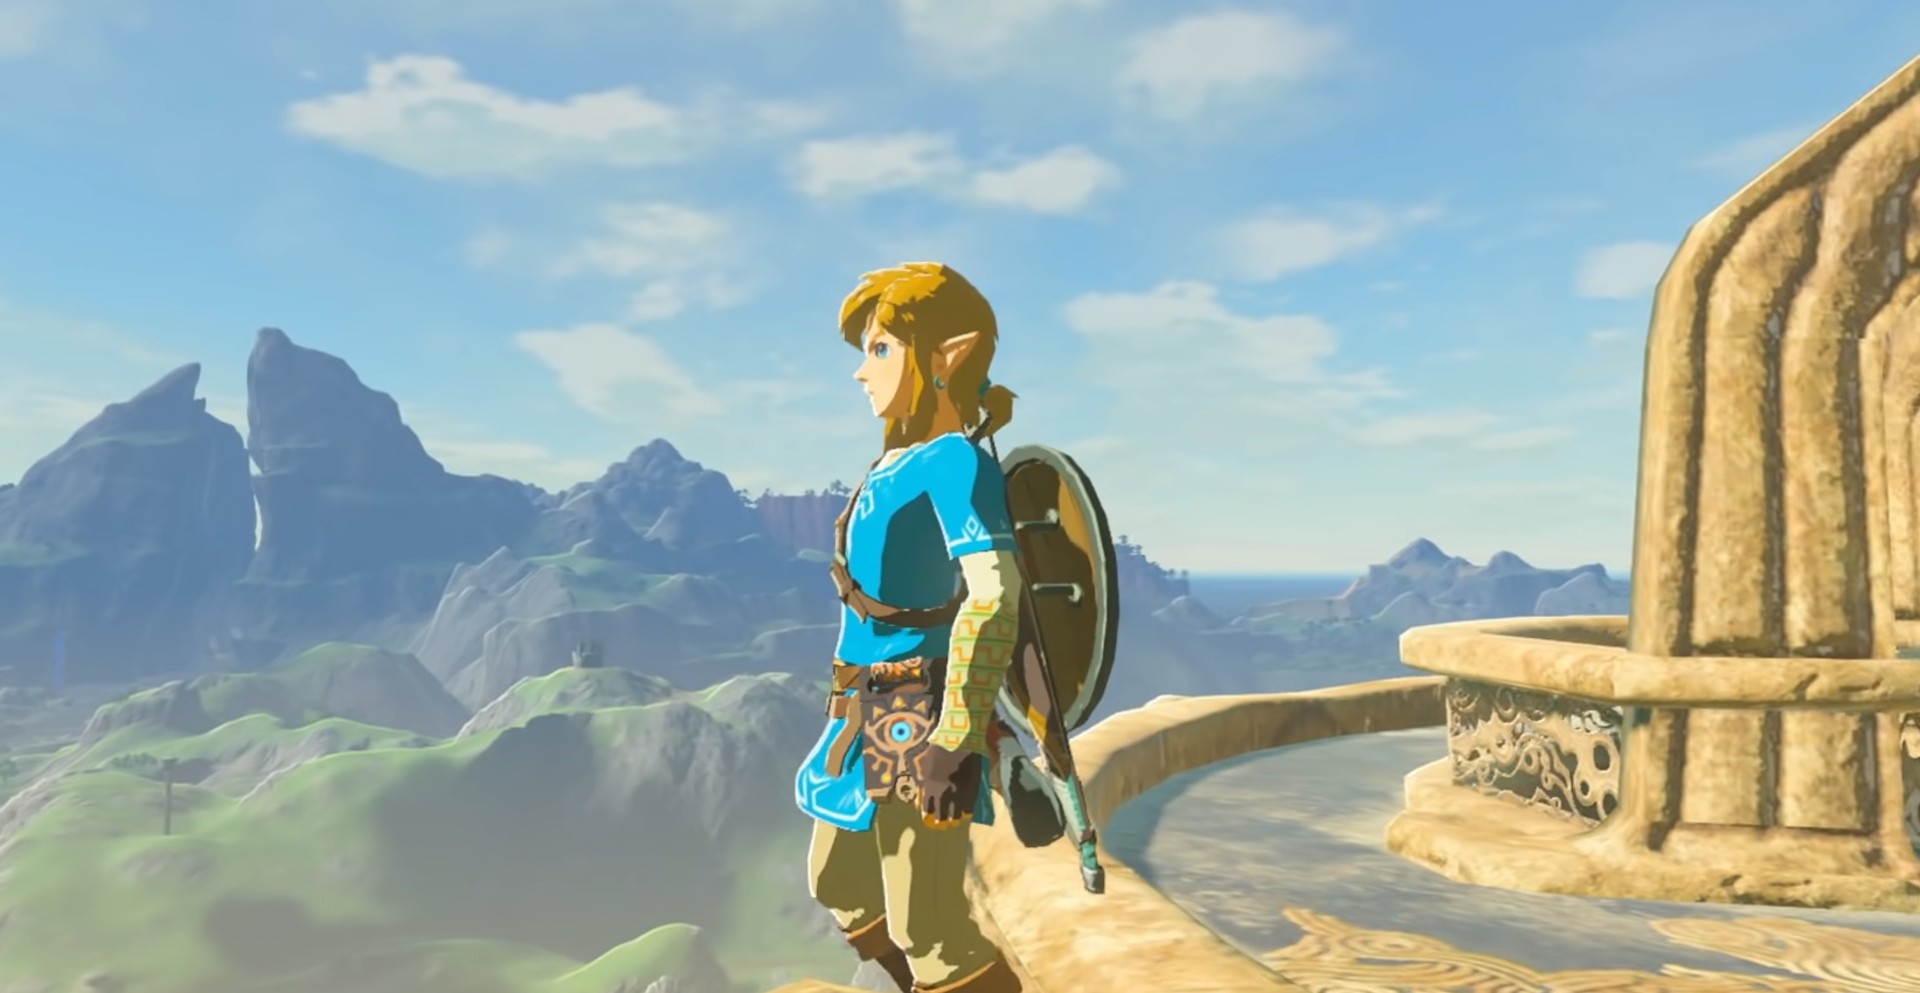 ชาวเกมประเทศญี่ปุ่นยกให้ The Legend of Zelda: Breath of the Wild เป็นเกมที่ดีที่สุดตลอดกาล